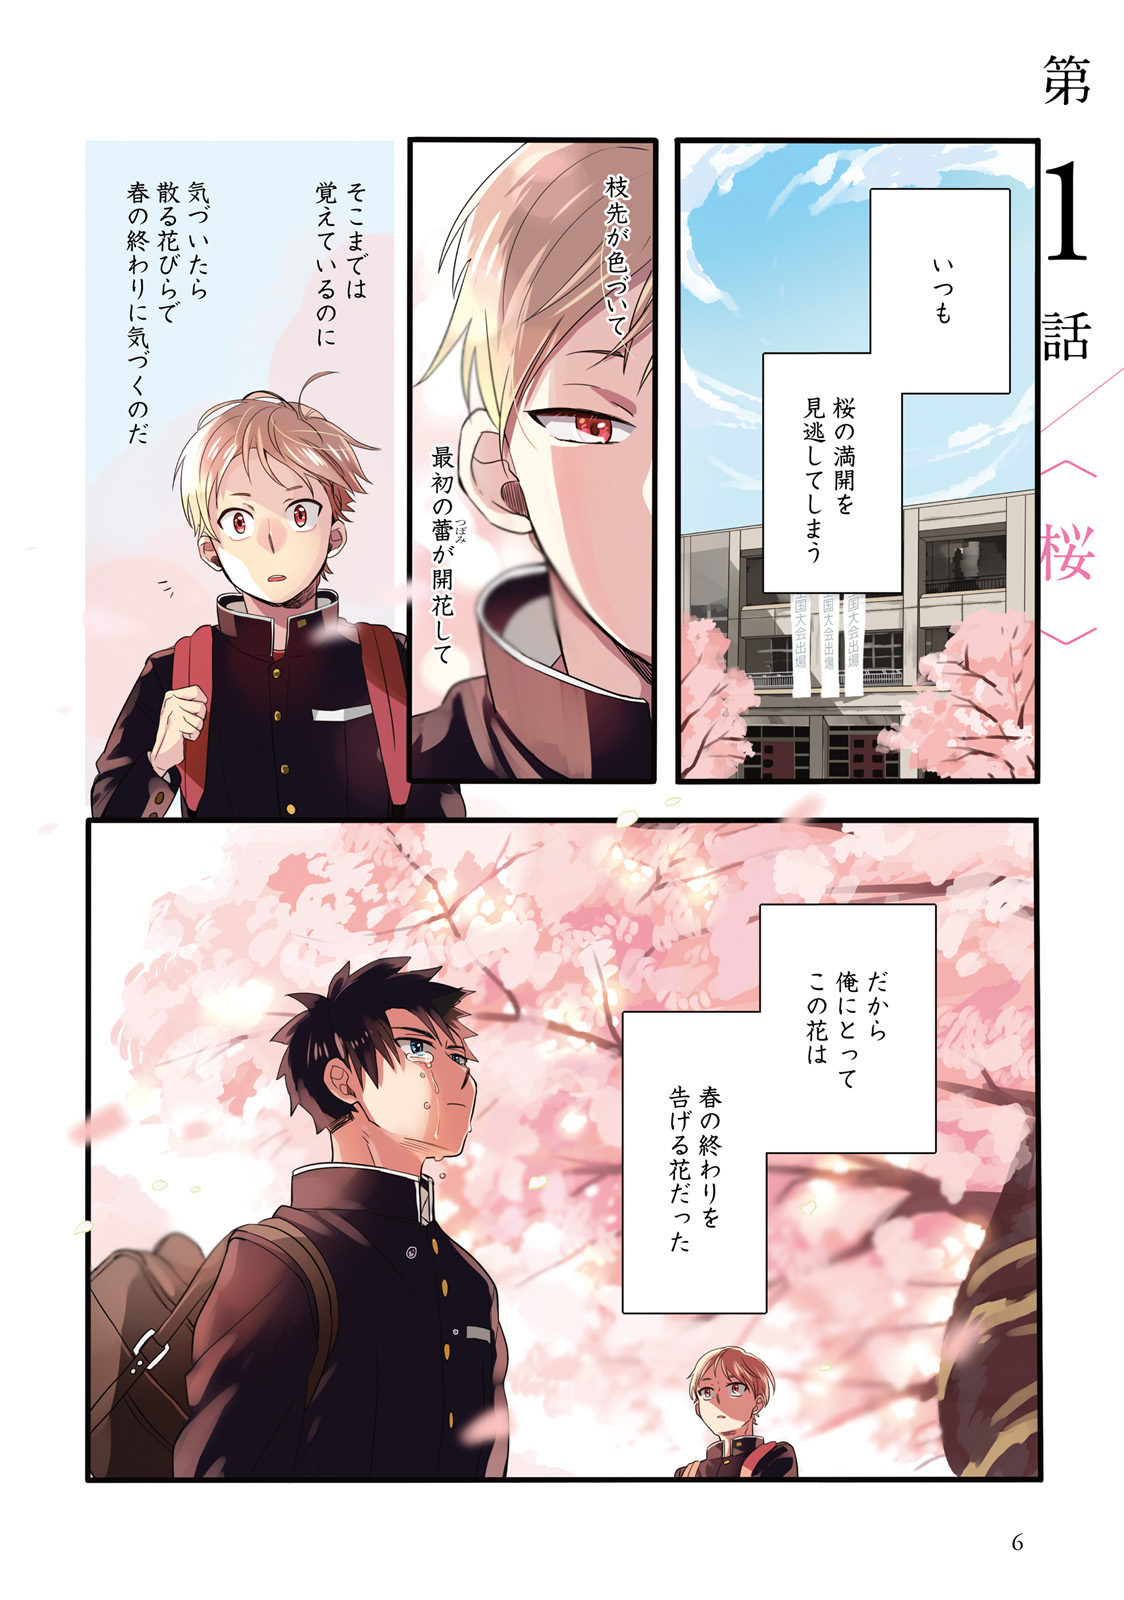 「晴れのち四季部」第1巻1話「桜」